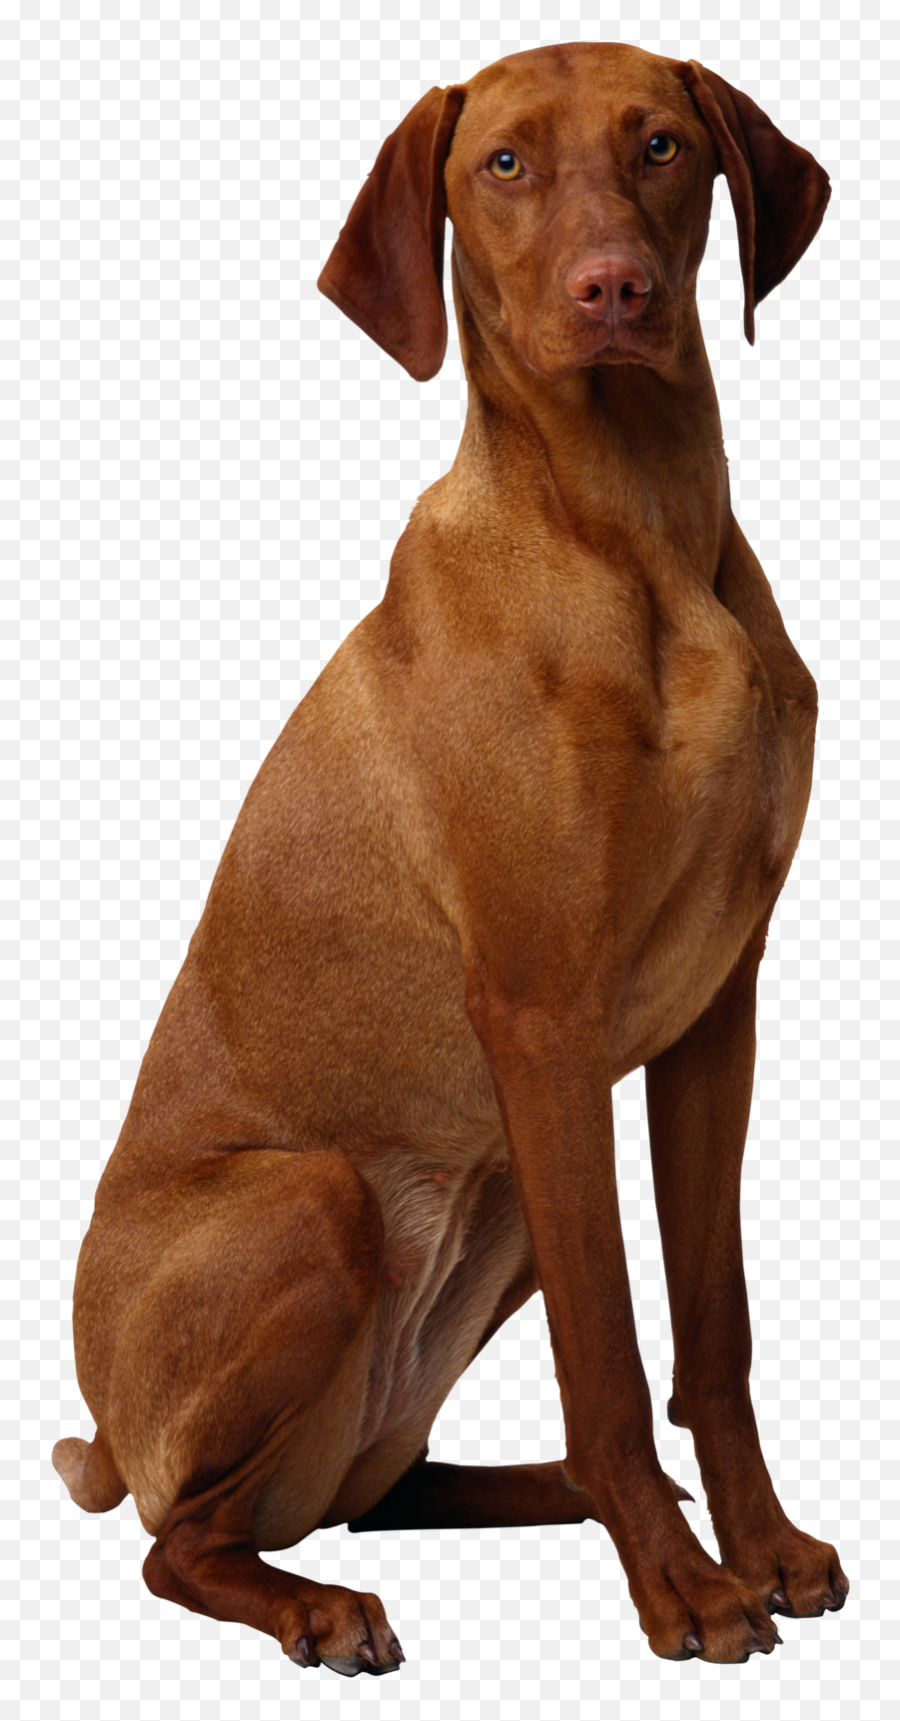 Transparent Background Brown Dog - Brown Dog Transparent Background Emoji,Dog Transparent